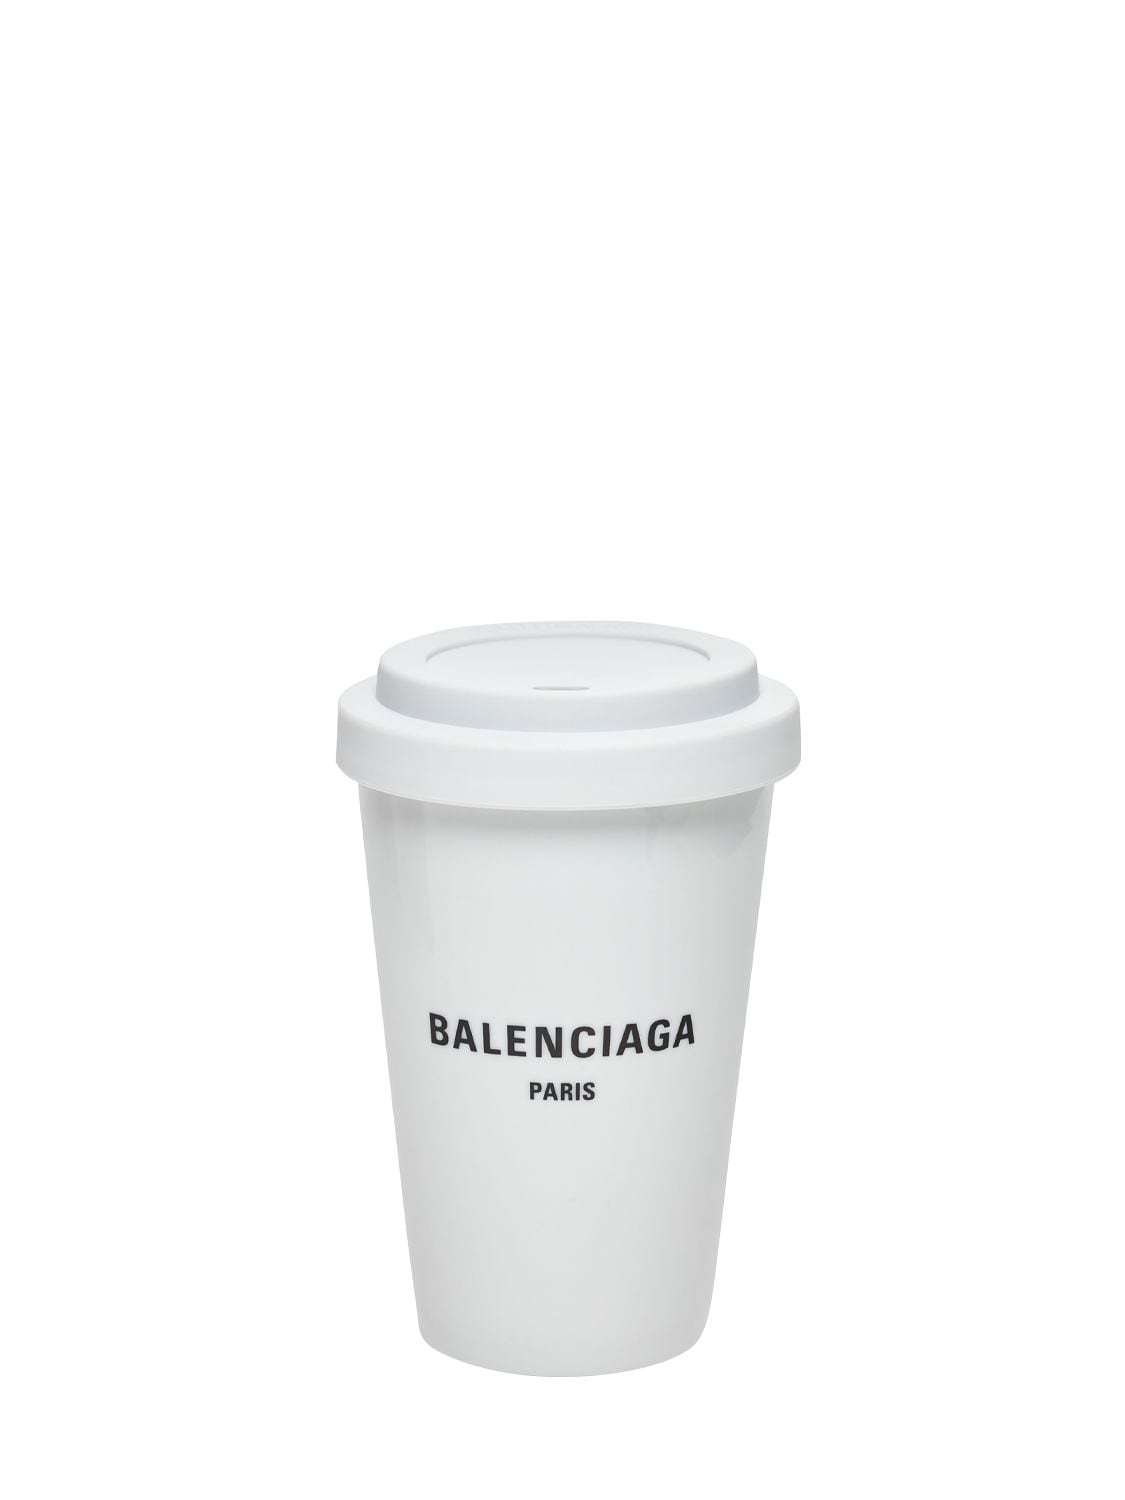 Image of Paris Porcelain Coffee Cup